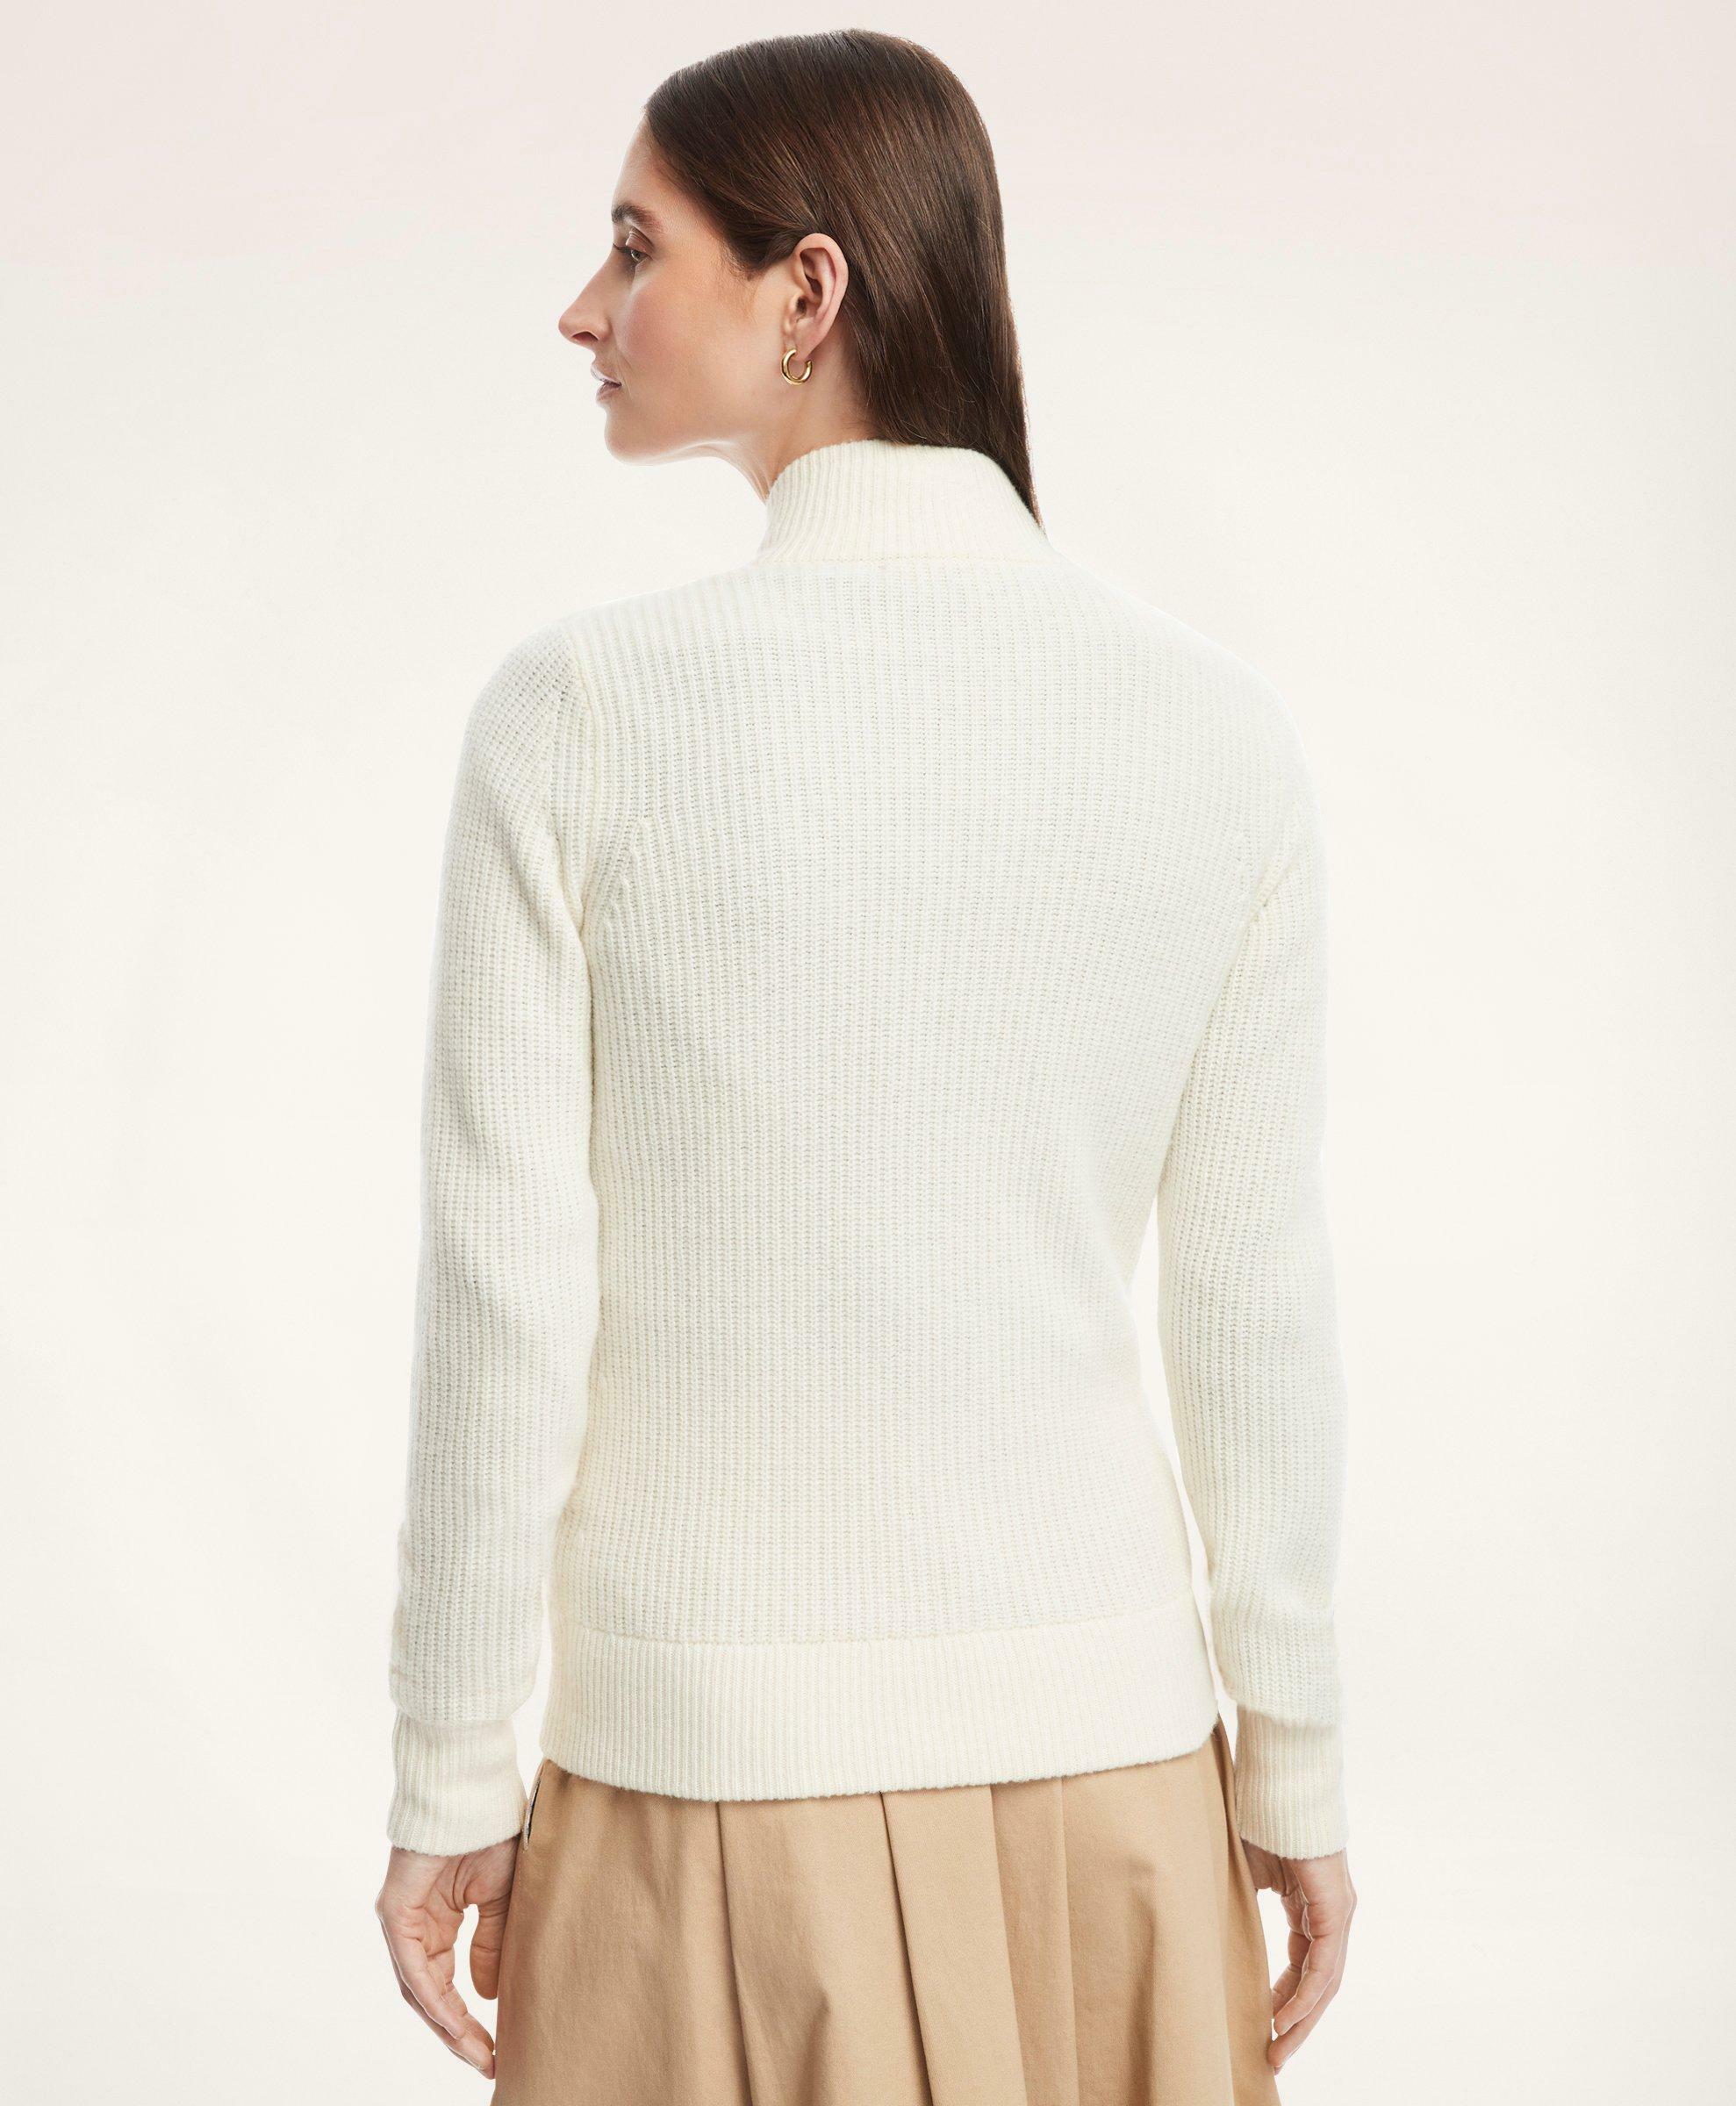 Brooks Brothers Women's Merino Wool Zip Sweater Jacket | Cream